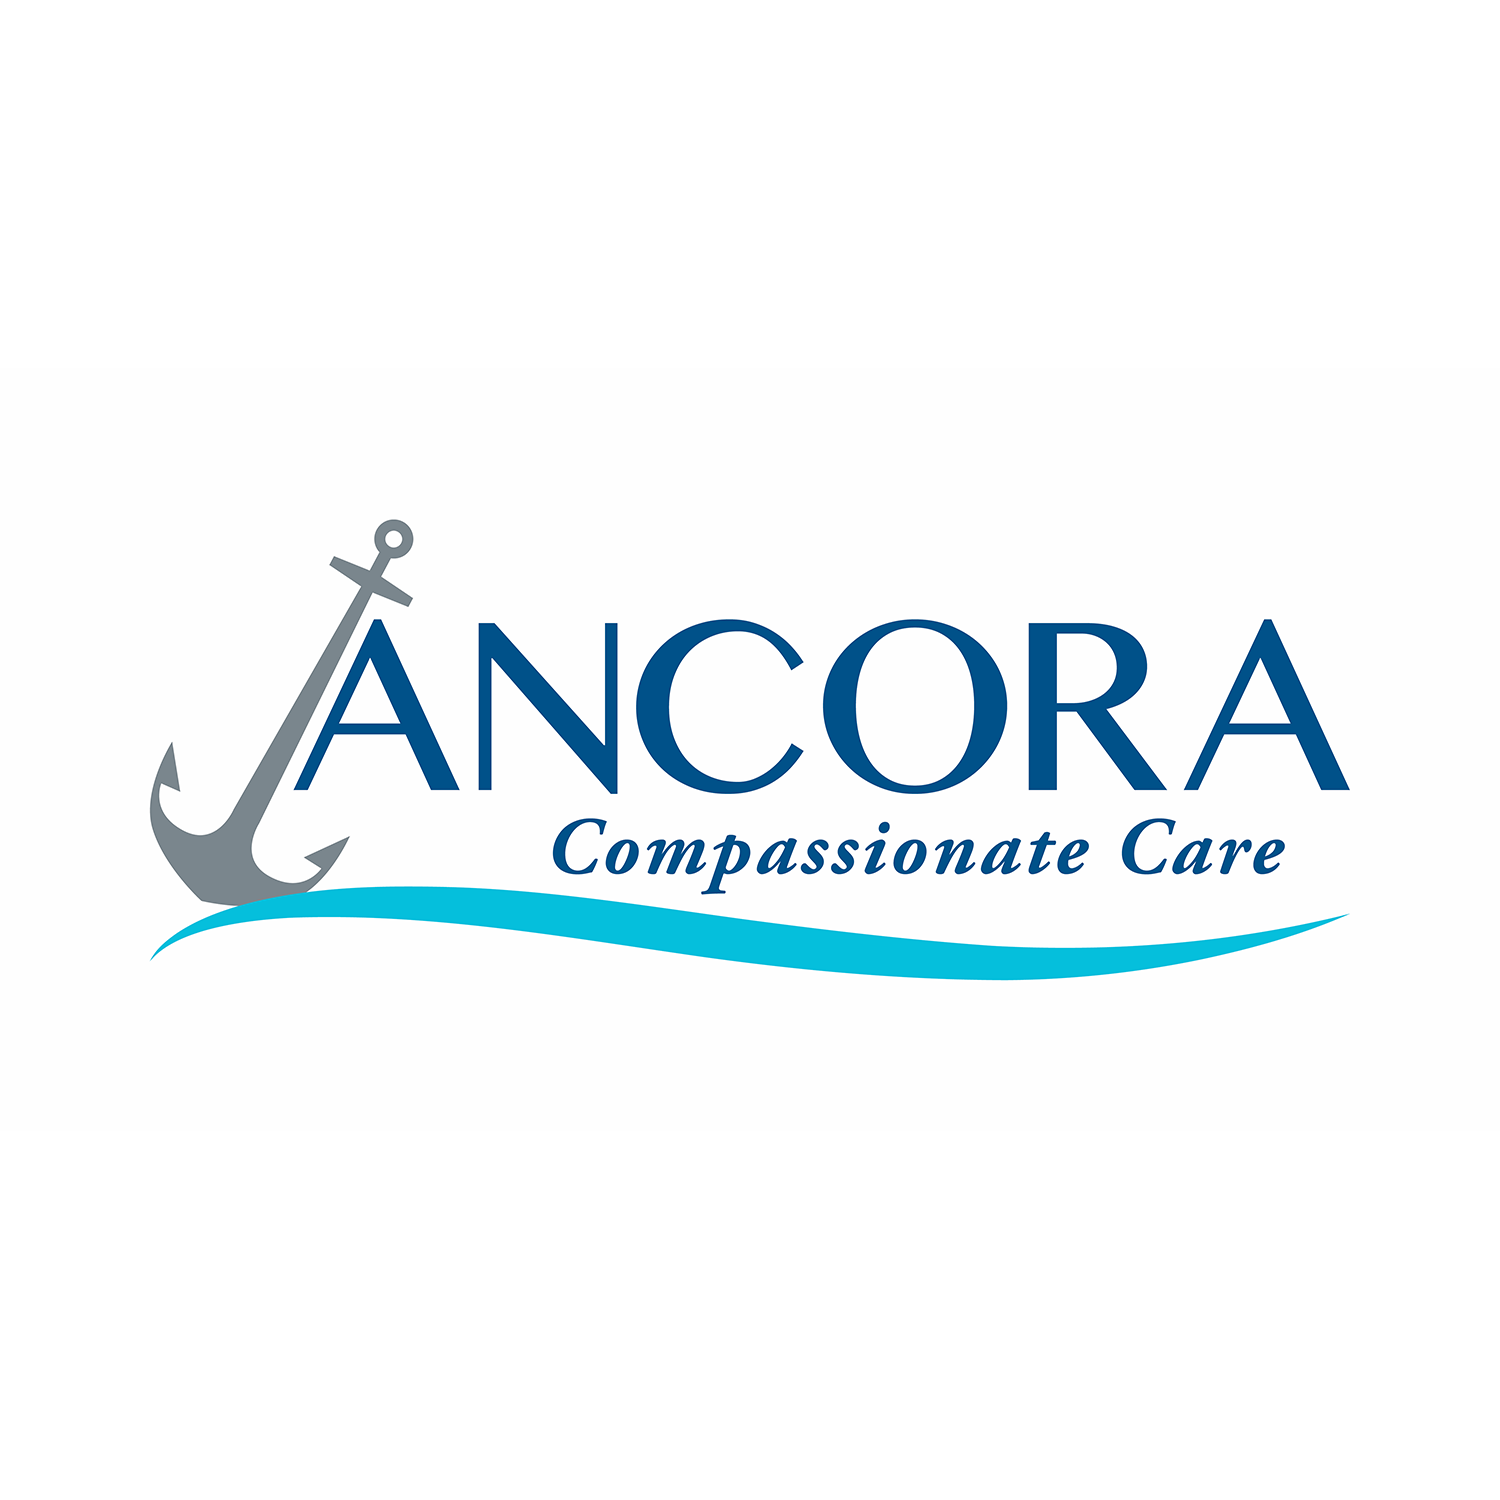 Ancora Compassionate Care logo